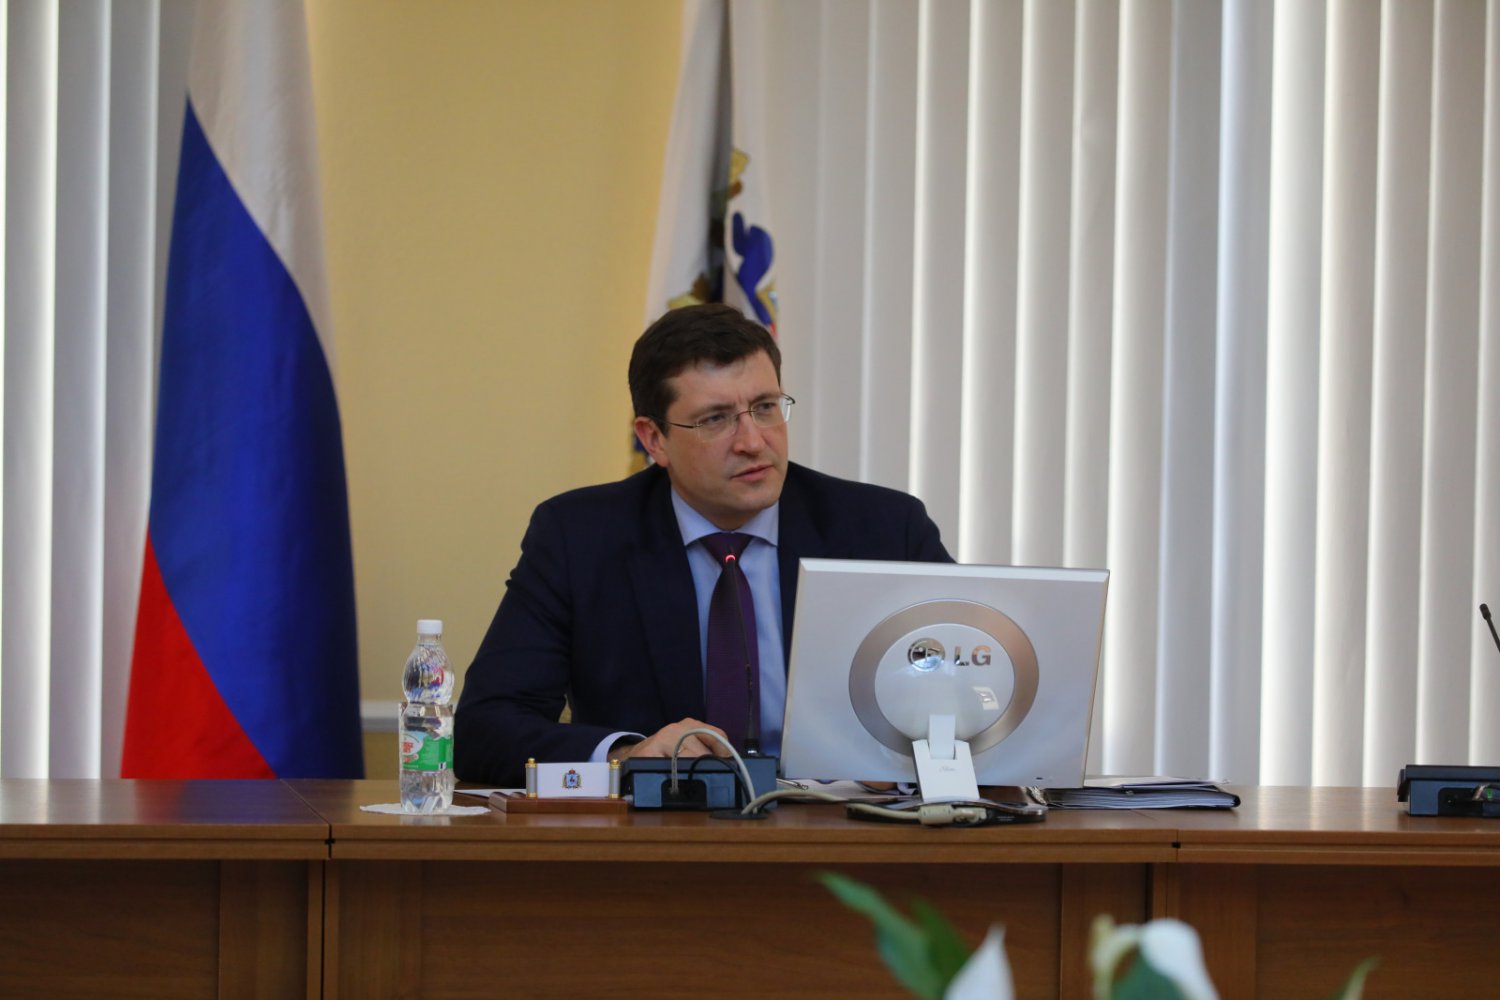 Нижегородский НОЦ будет участвовать в проектах Национальной технологической инициативы